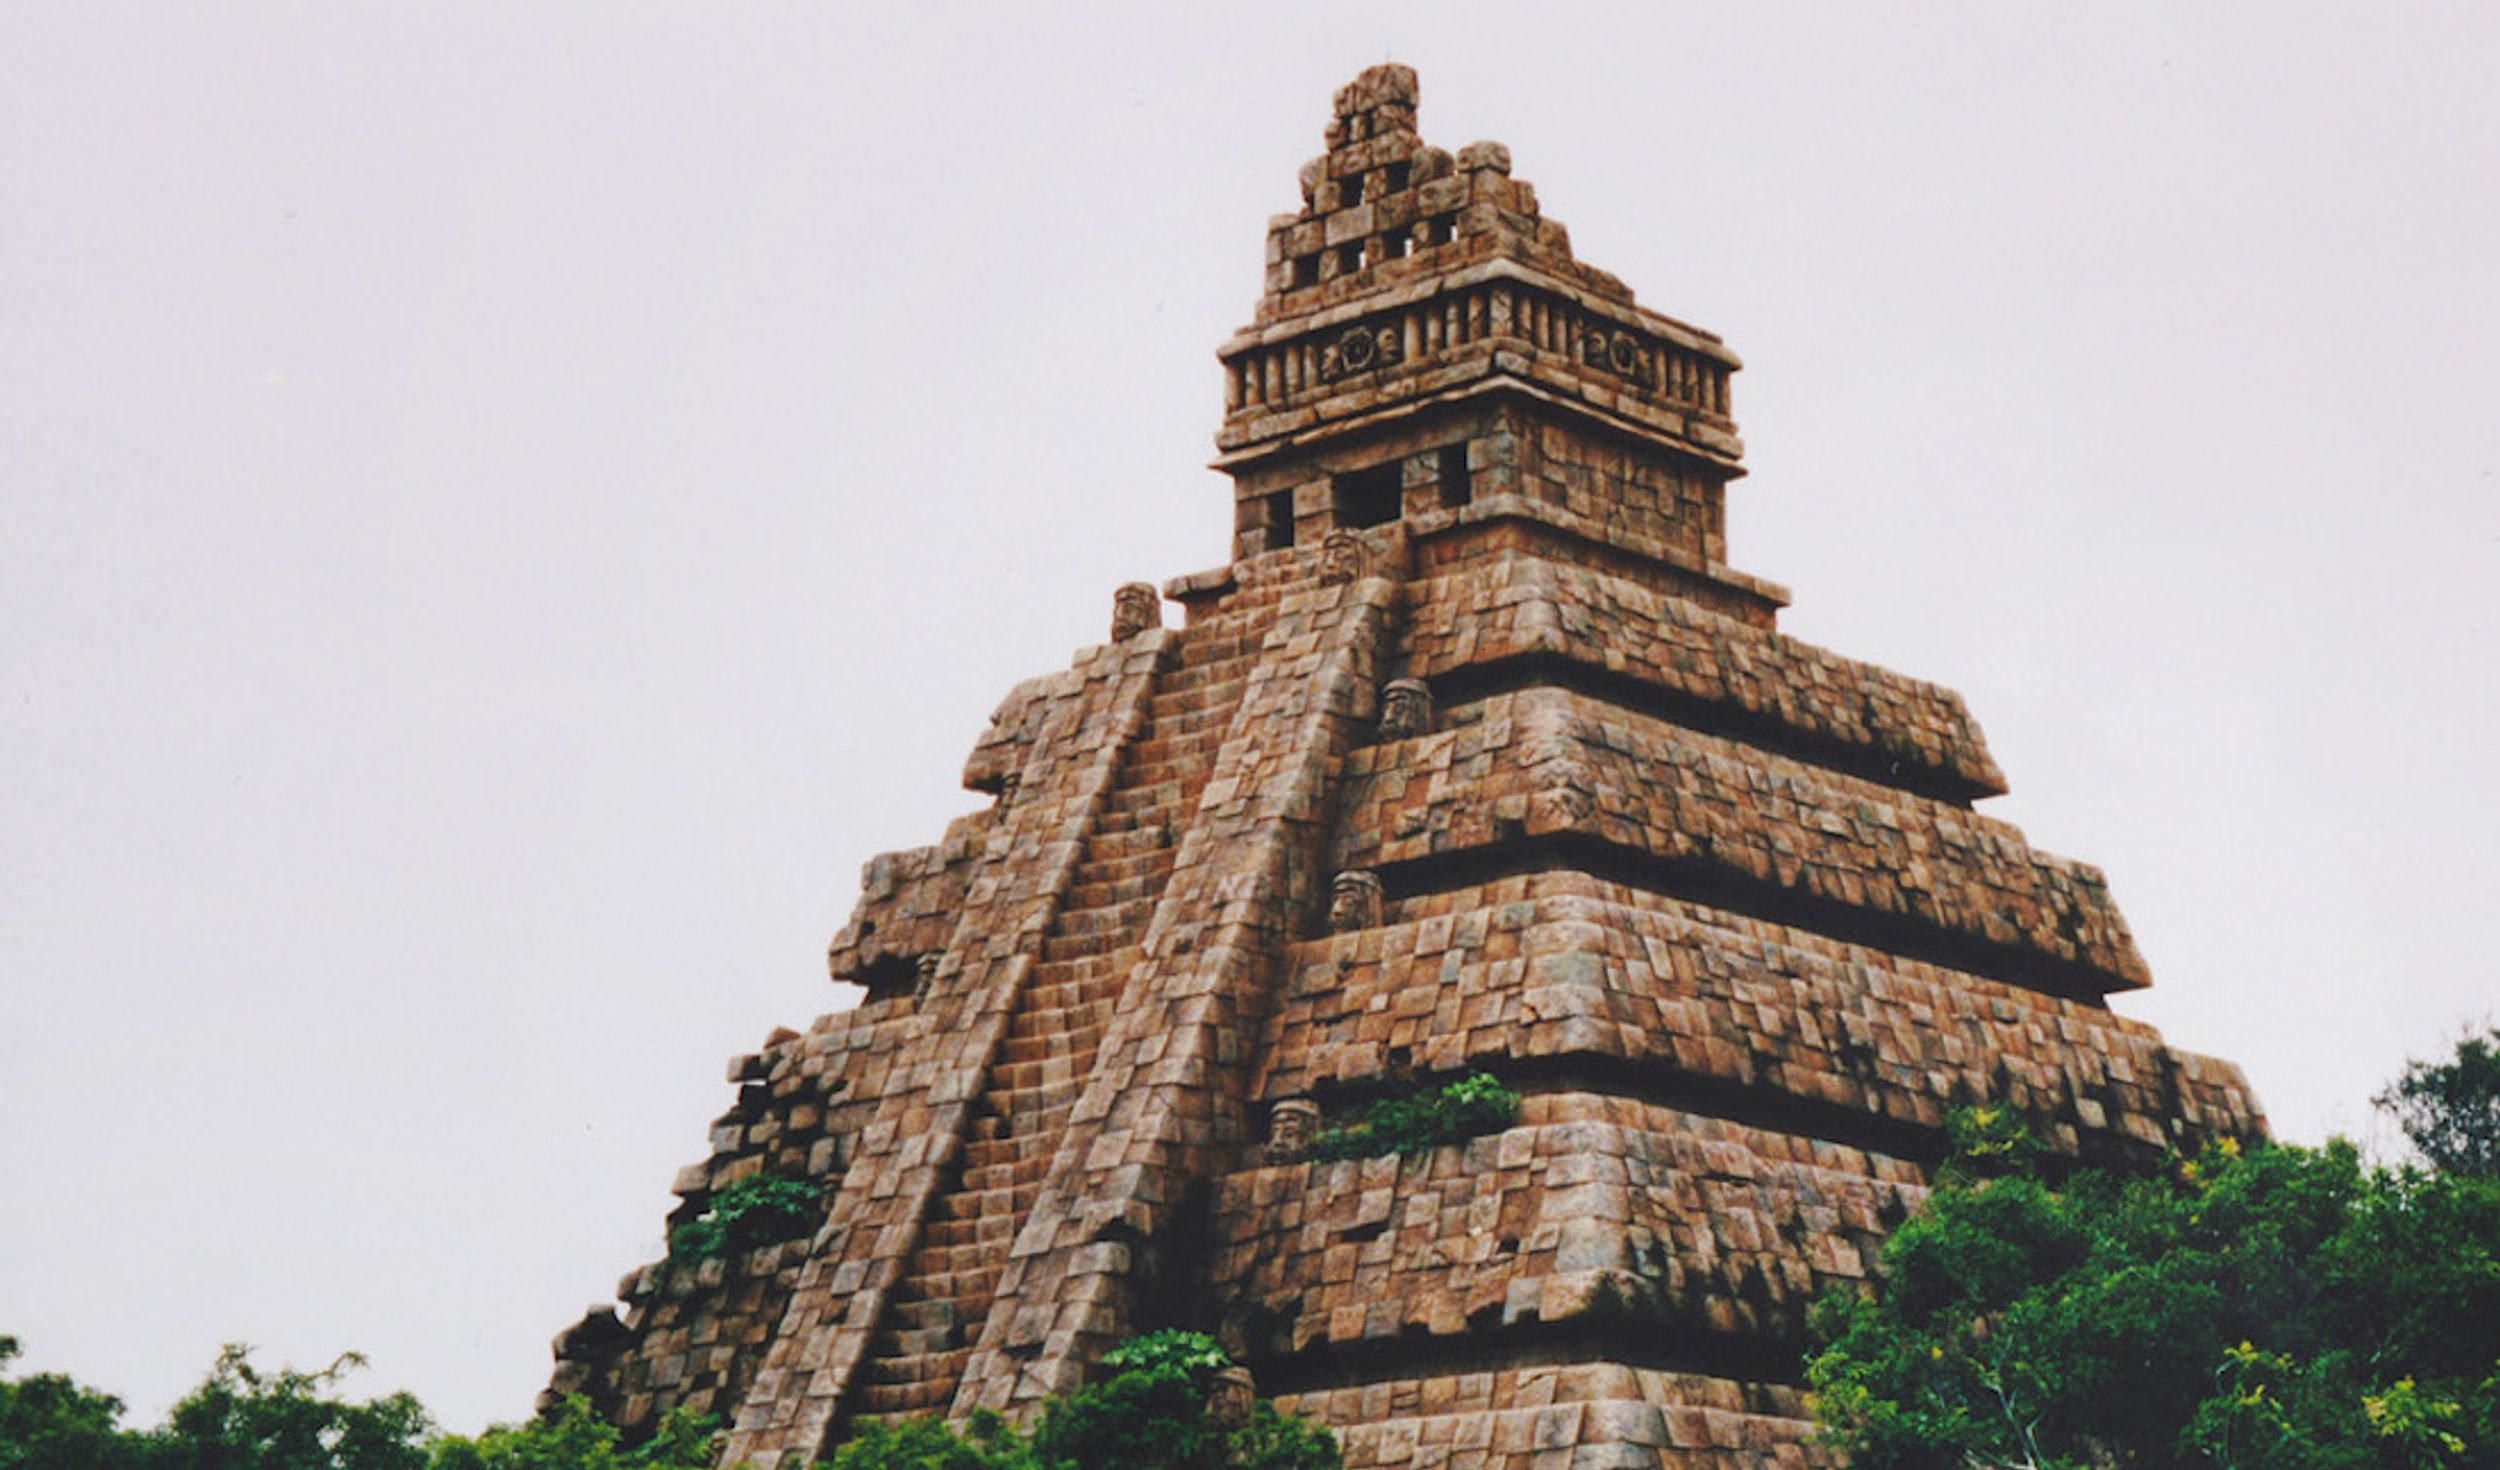 10 Unique Facts About Aztec Human Sacrifice